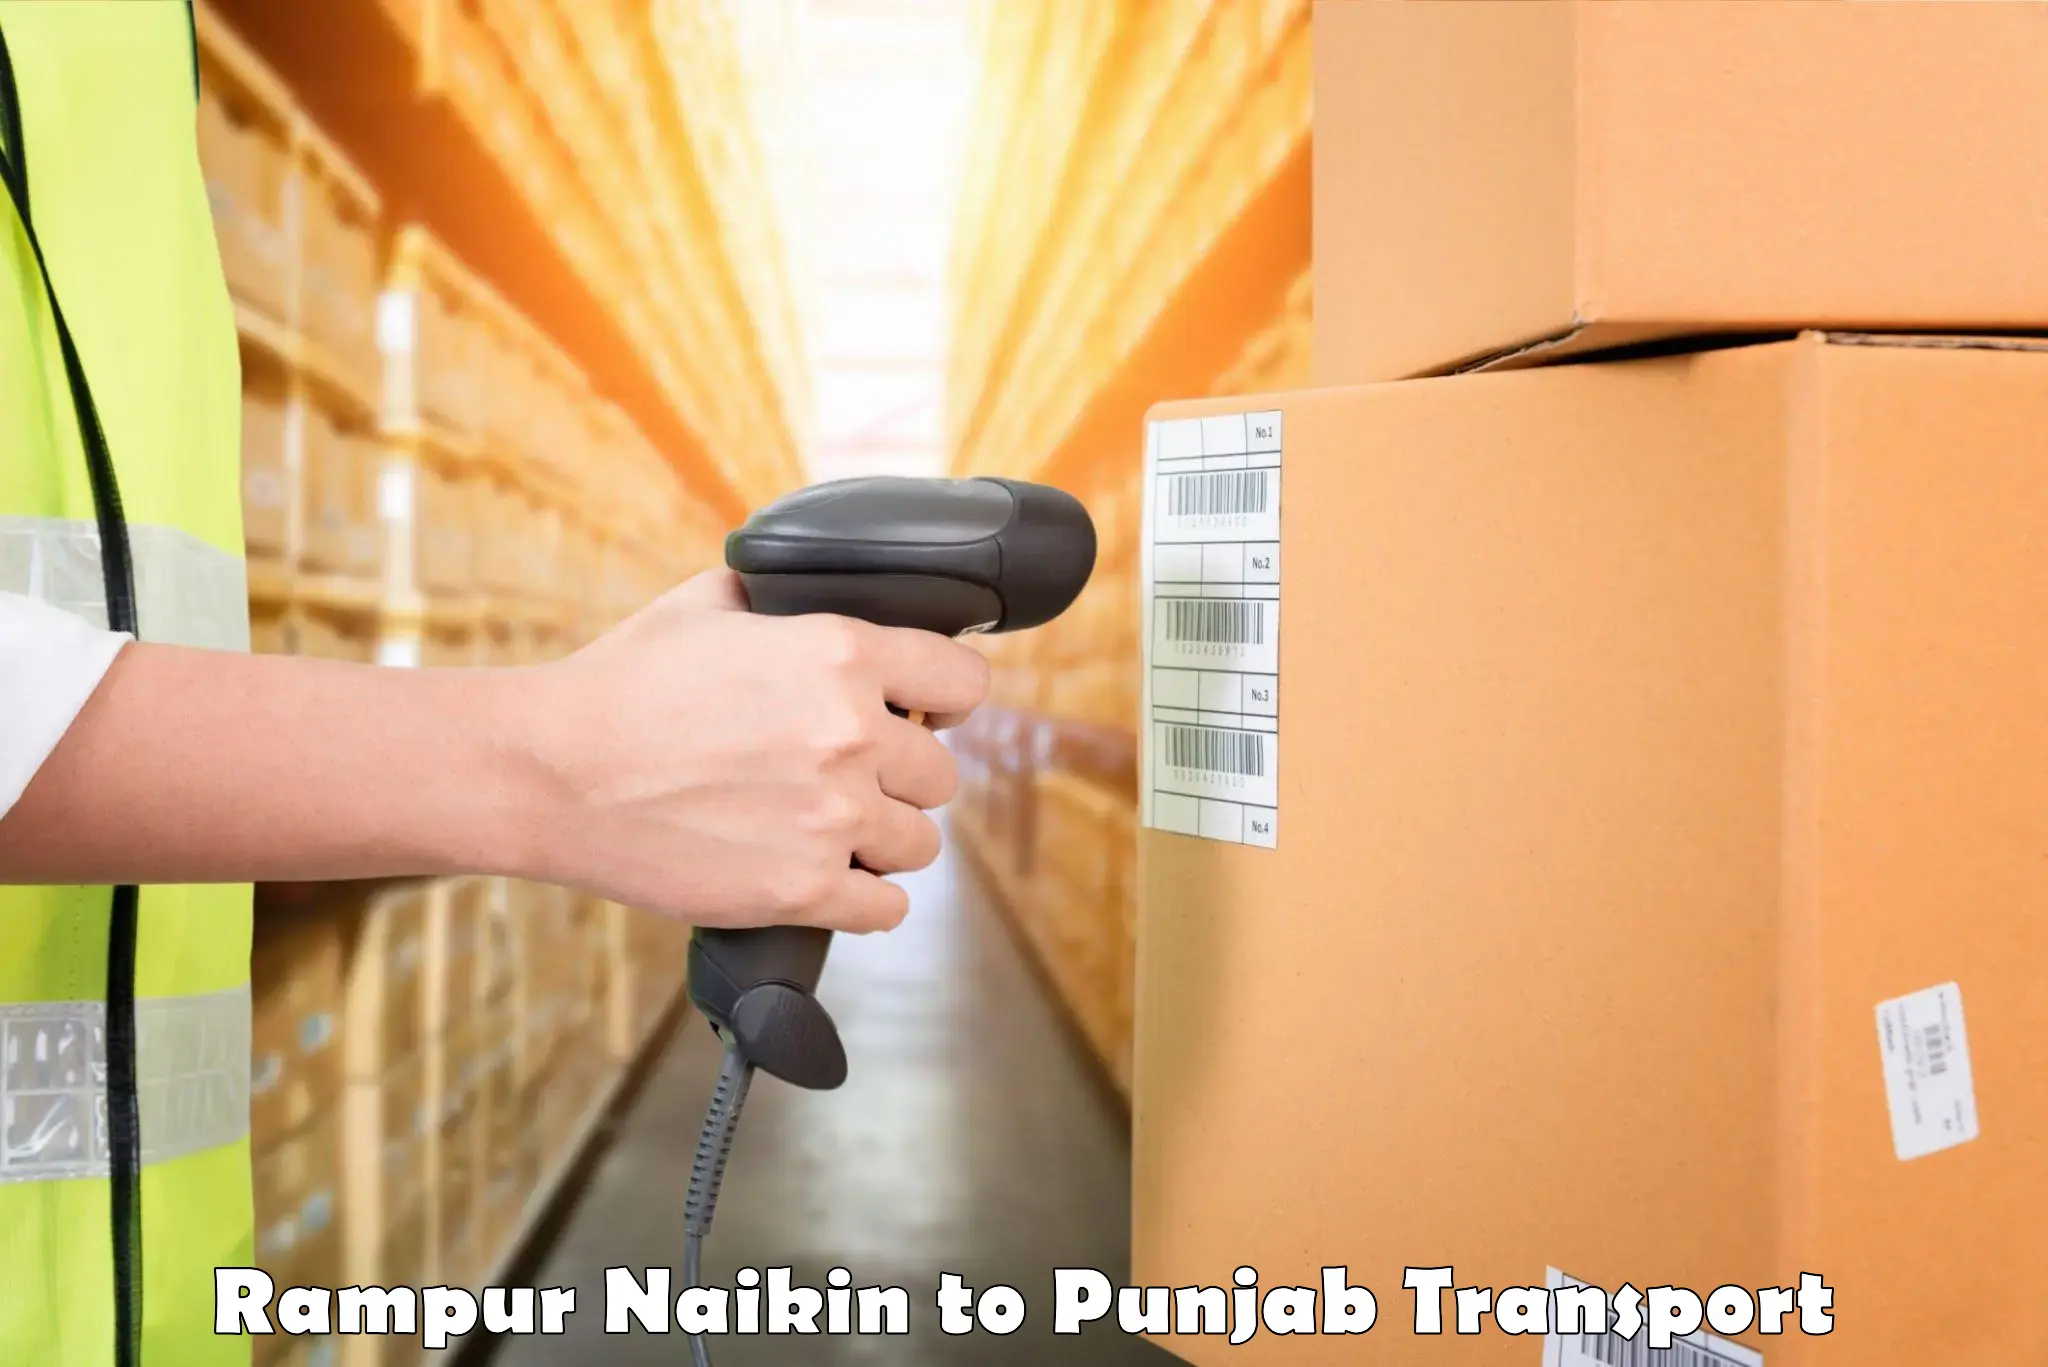 Shipping partner Rampur Naikin to Jalandhar